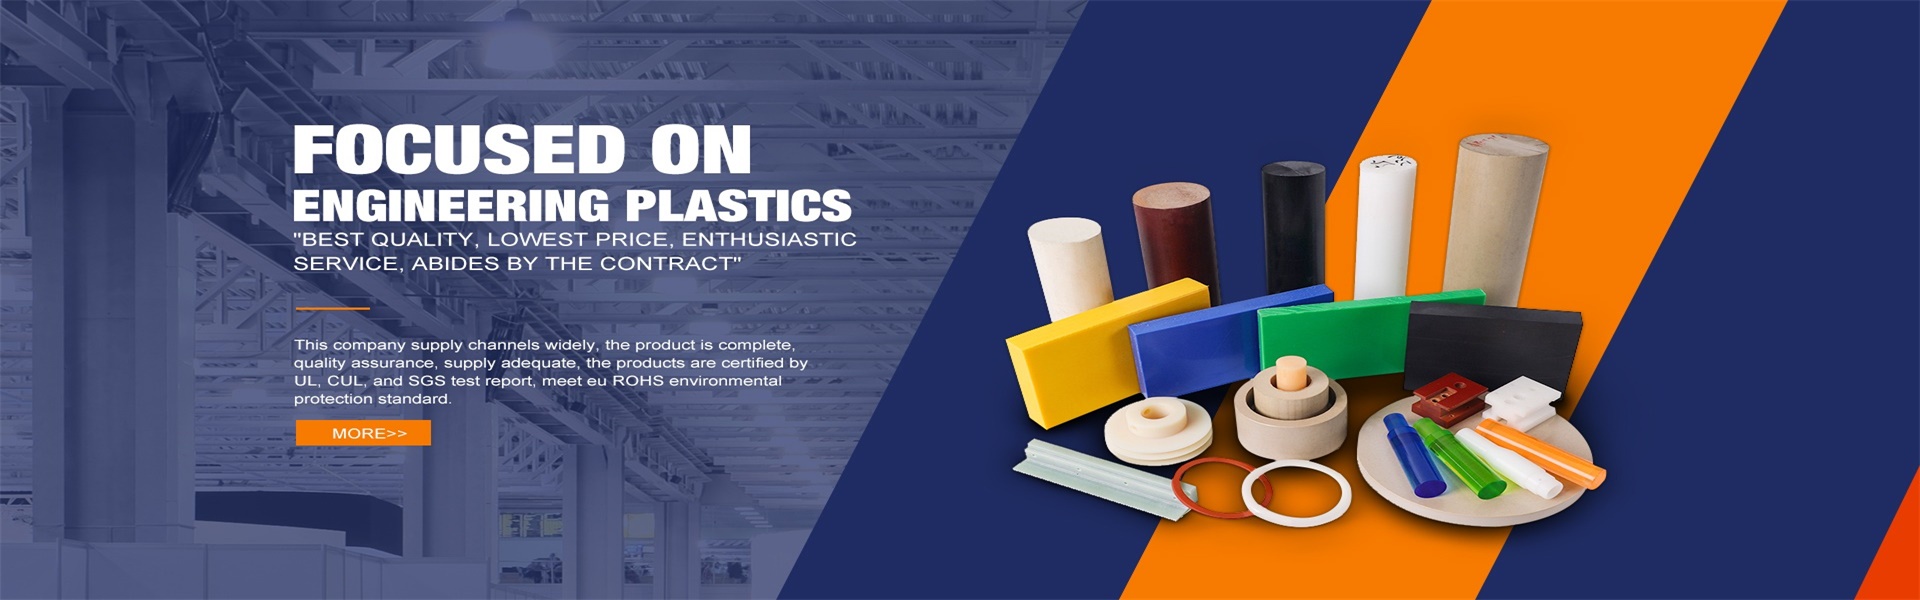 Bảng mờ, vải vòng,Dongguan Zhimian Plastic Materials Co., Ltd.